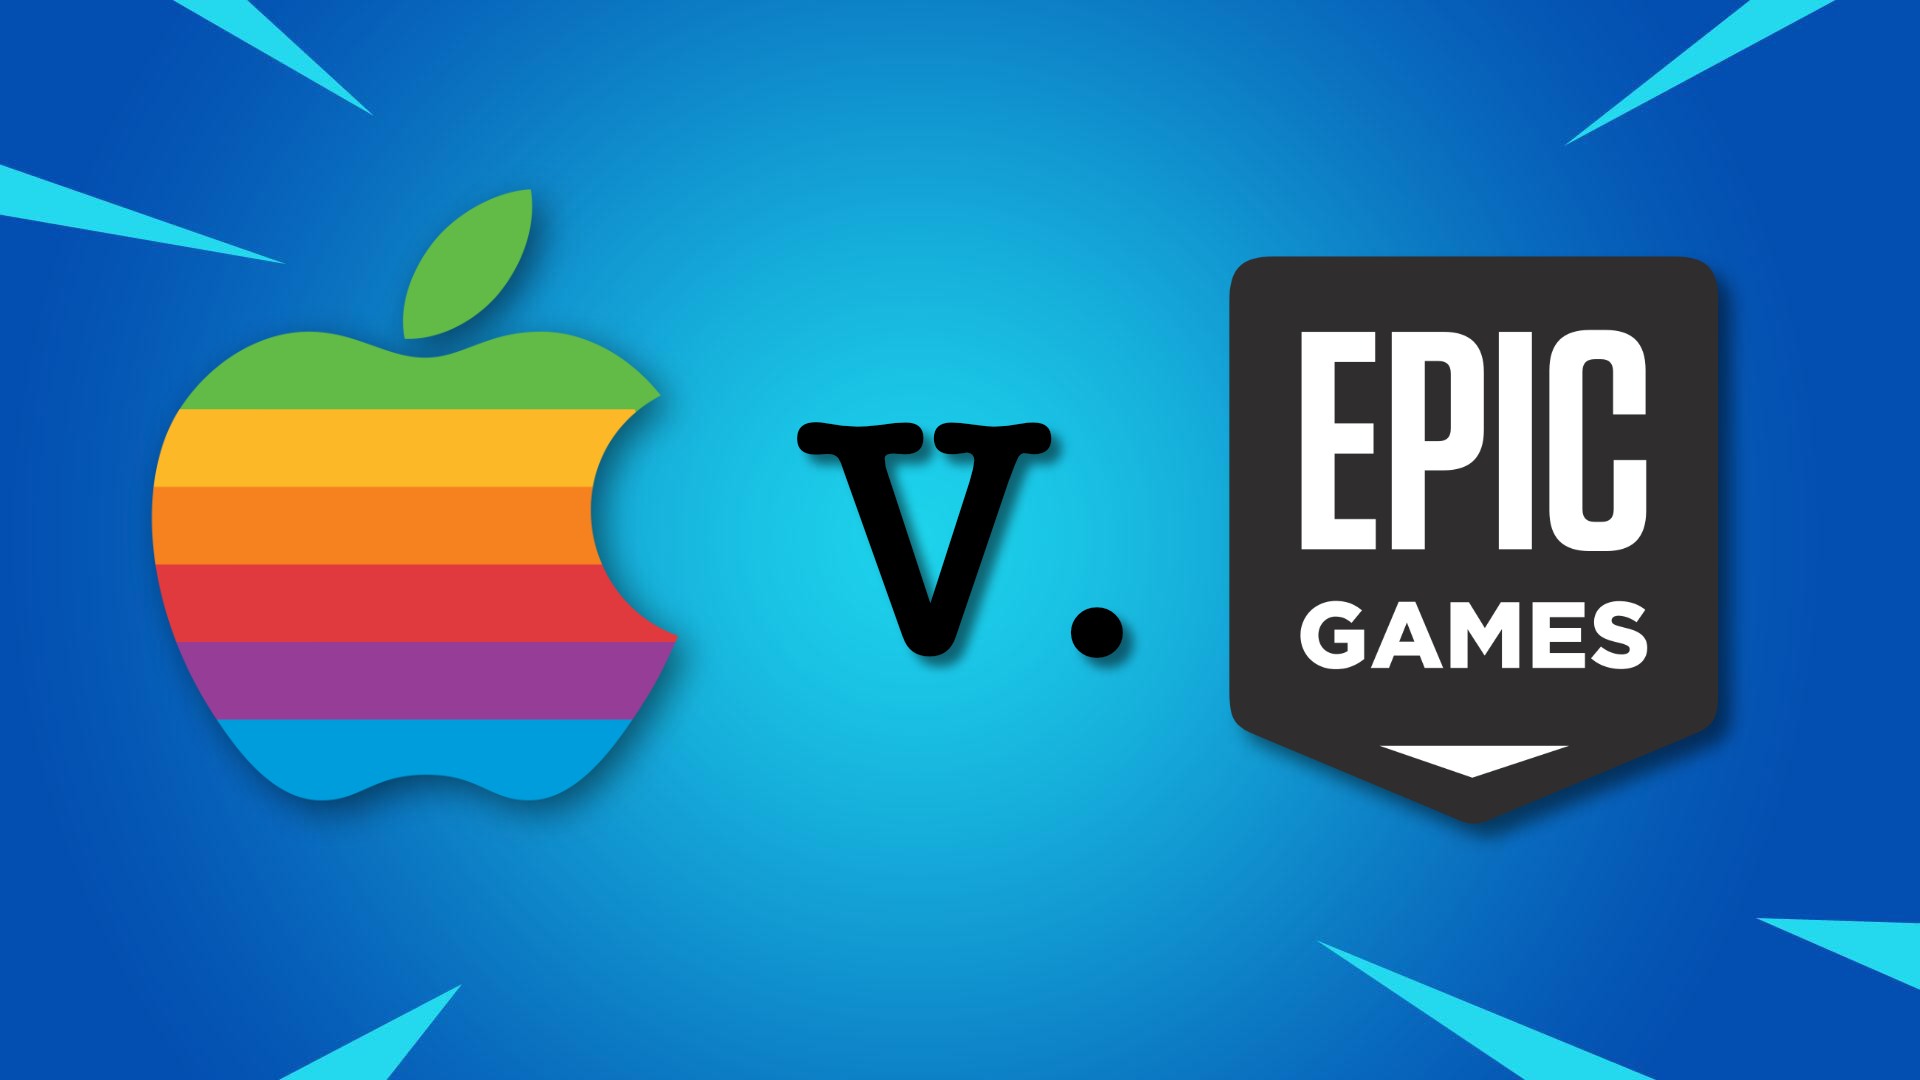 apple vs epic outcome